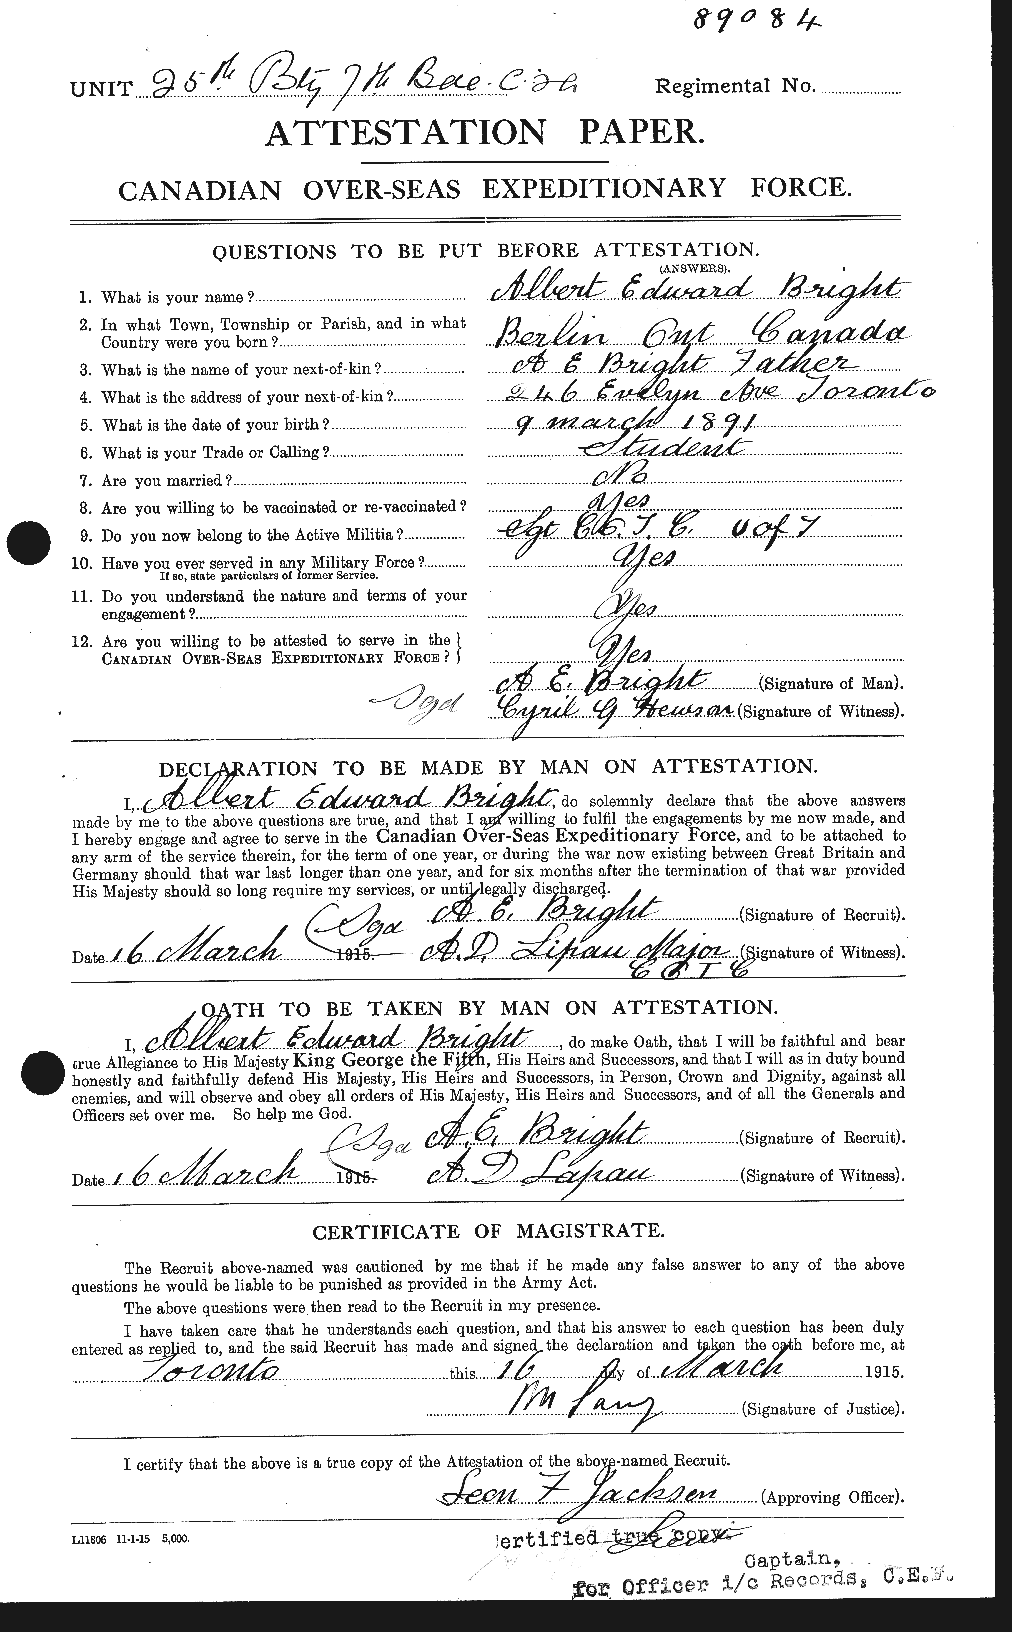 Dossiers du Personnel de la Première Guerre mondiale - CEC 264144a